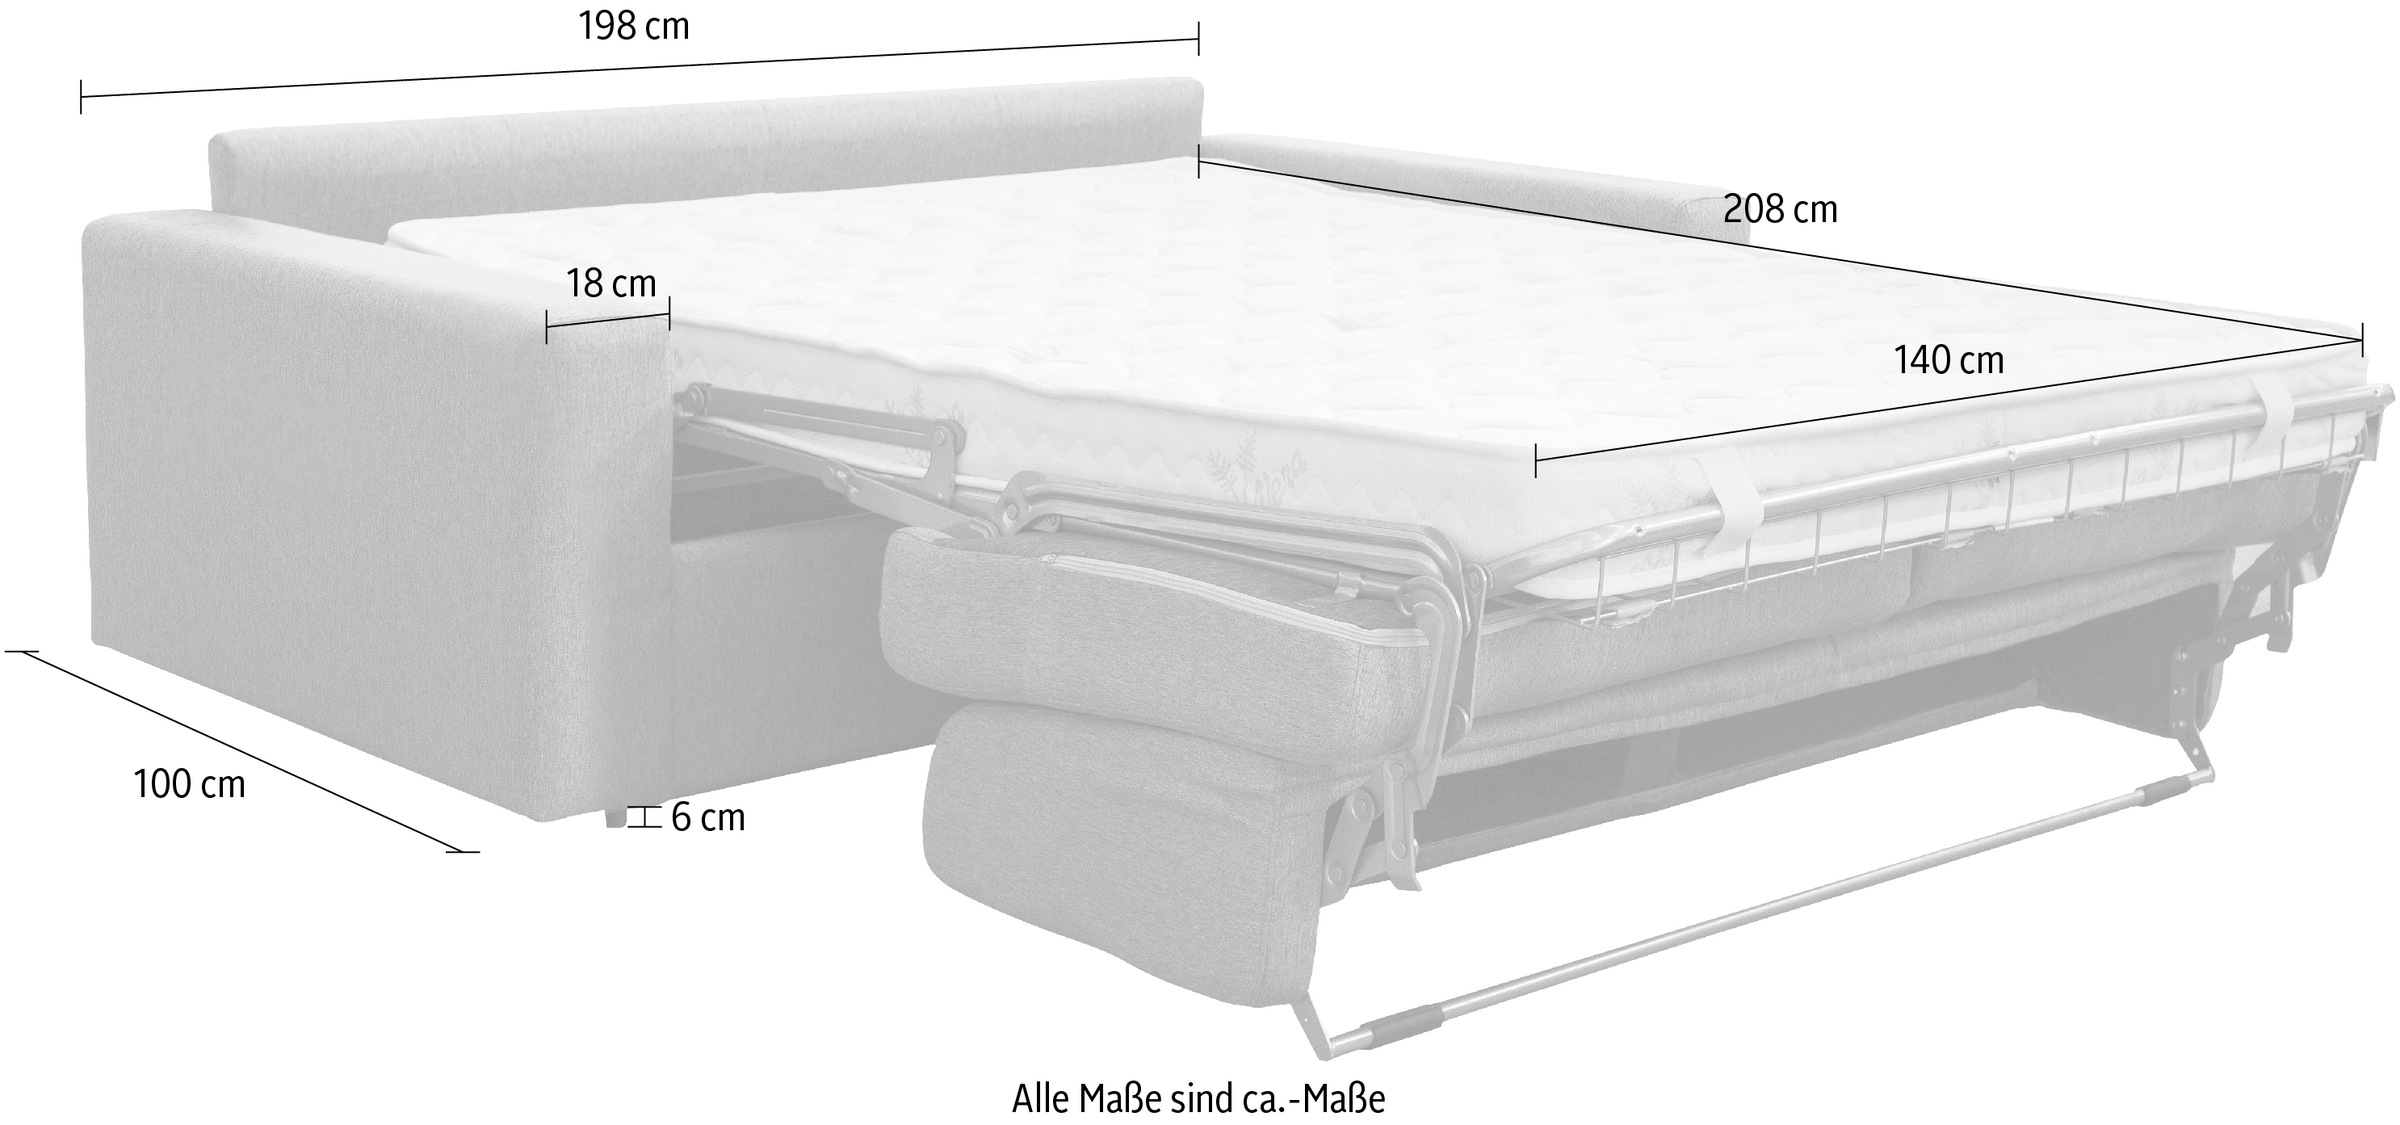 Nias Italia Schlafsofa »Bari«, und versandkostenfrei inklusive Matratze klappbaren auf 140/208 cm Bettunterbau, Liegefläche